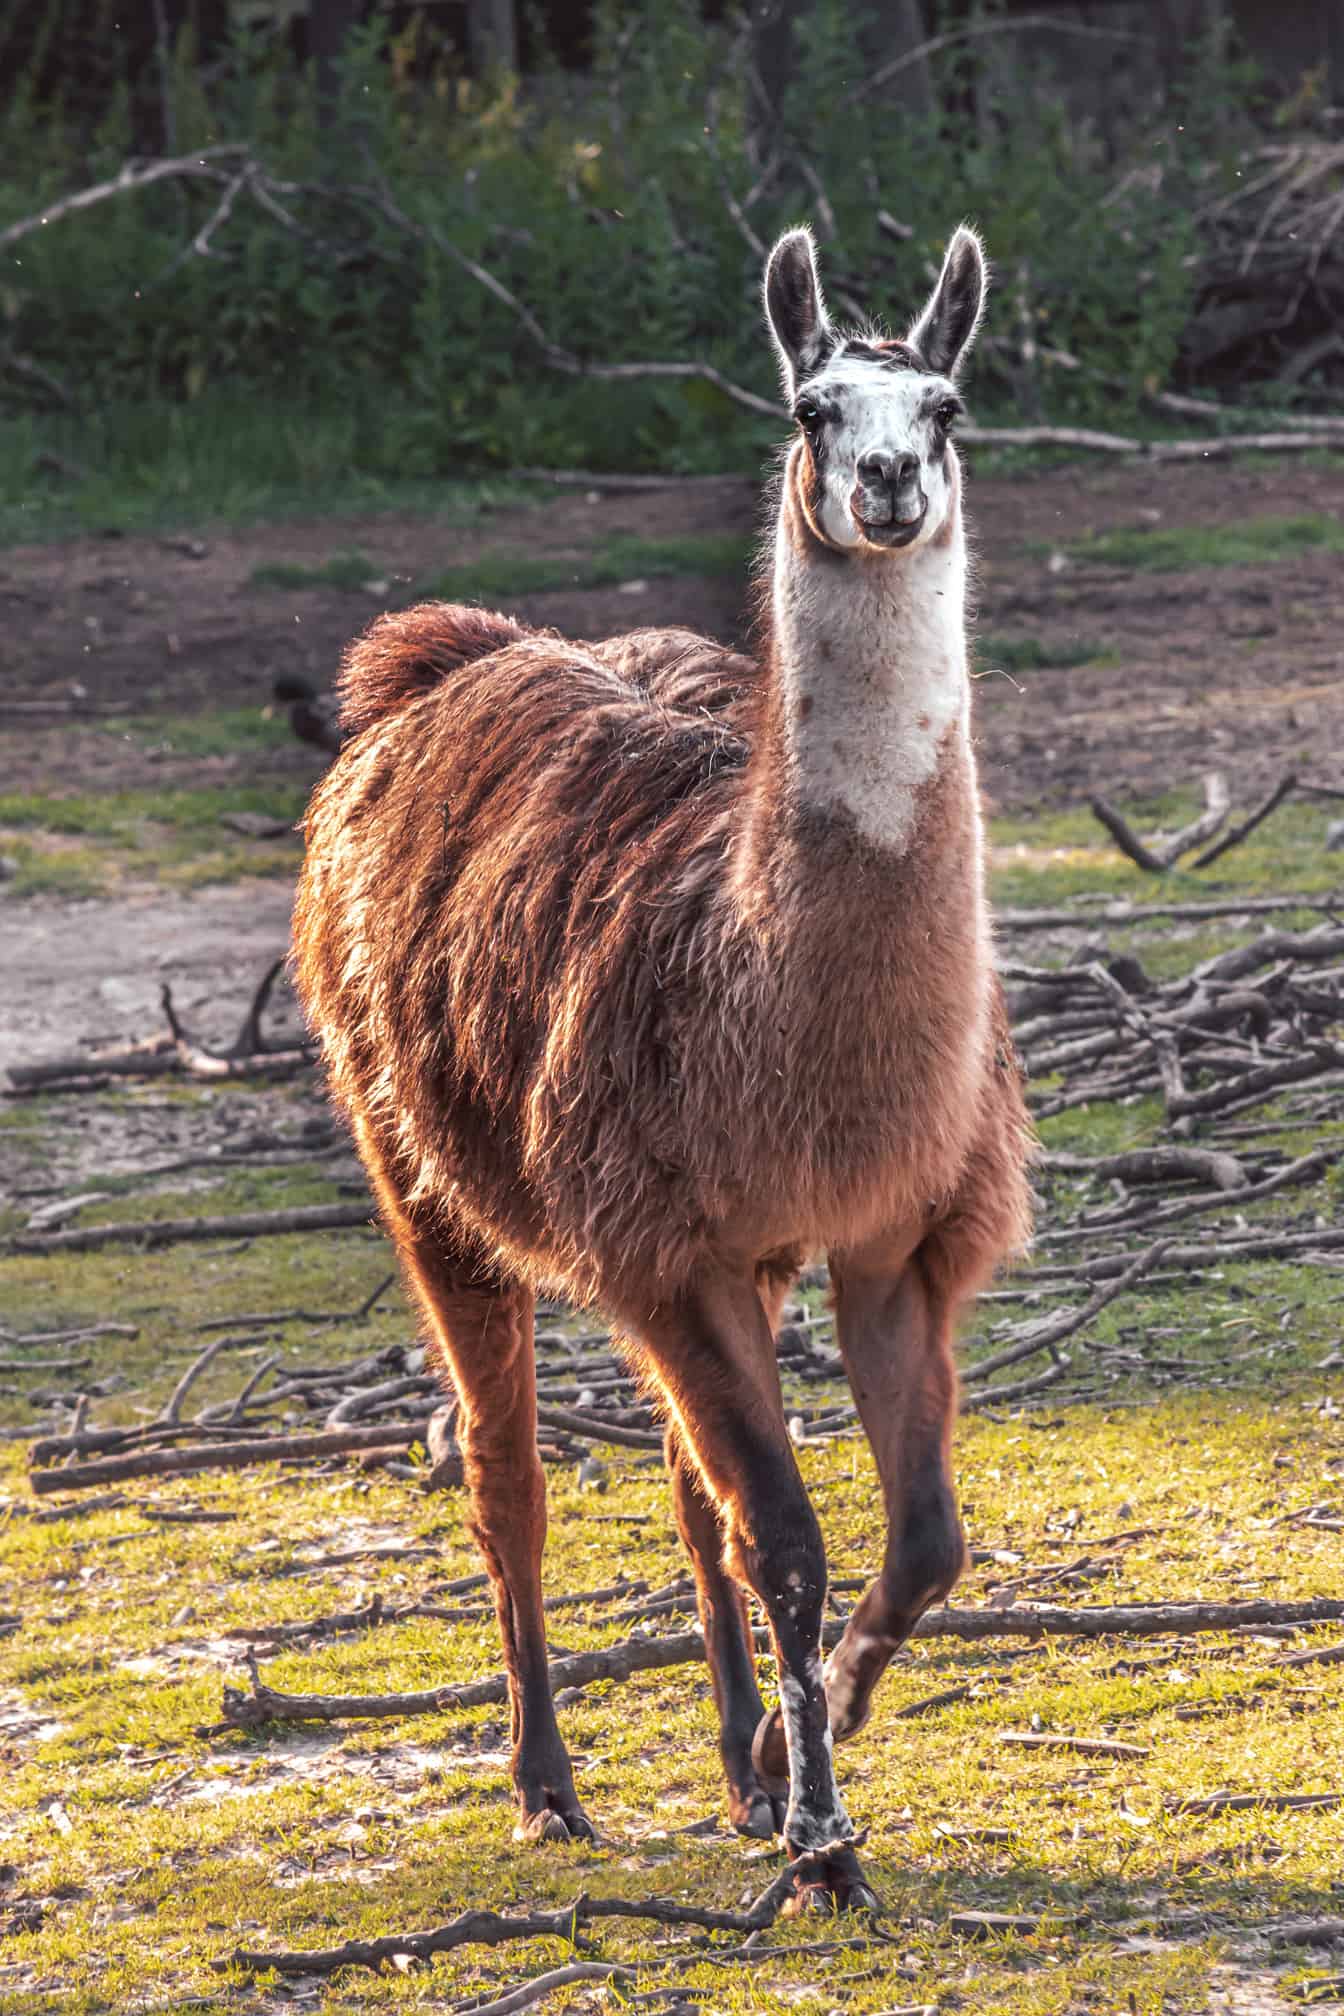 浅棕色 (Lama glama) 动物在荒野自然栖息地